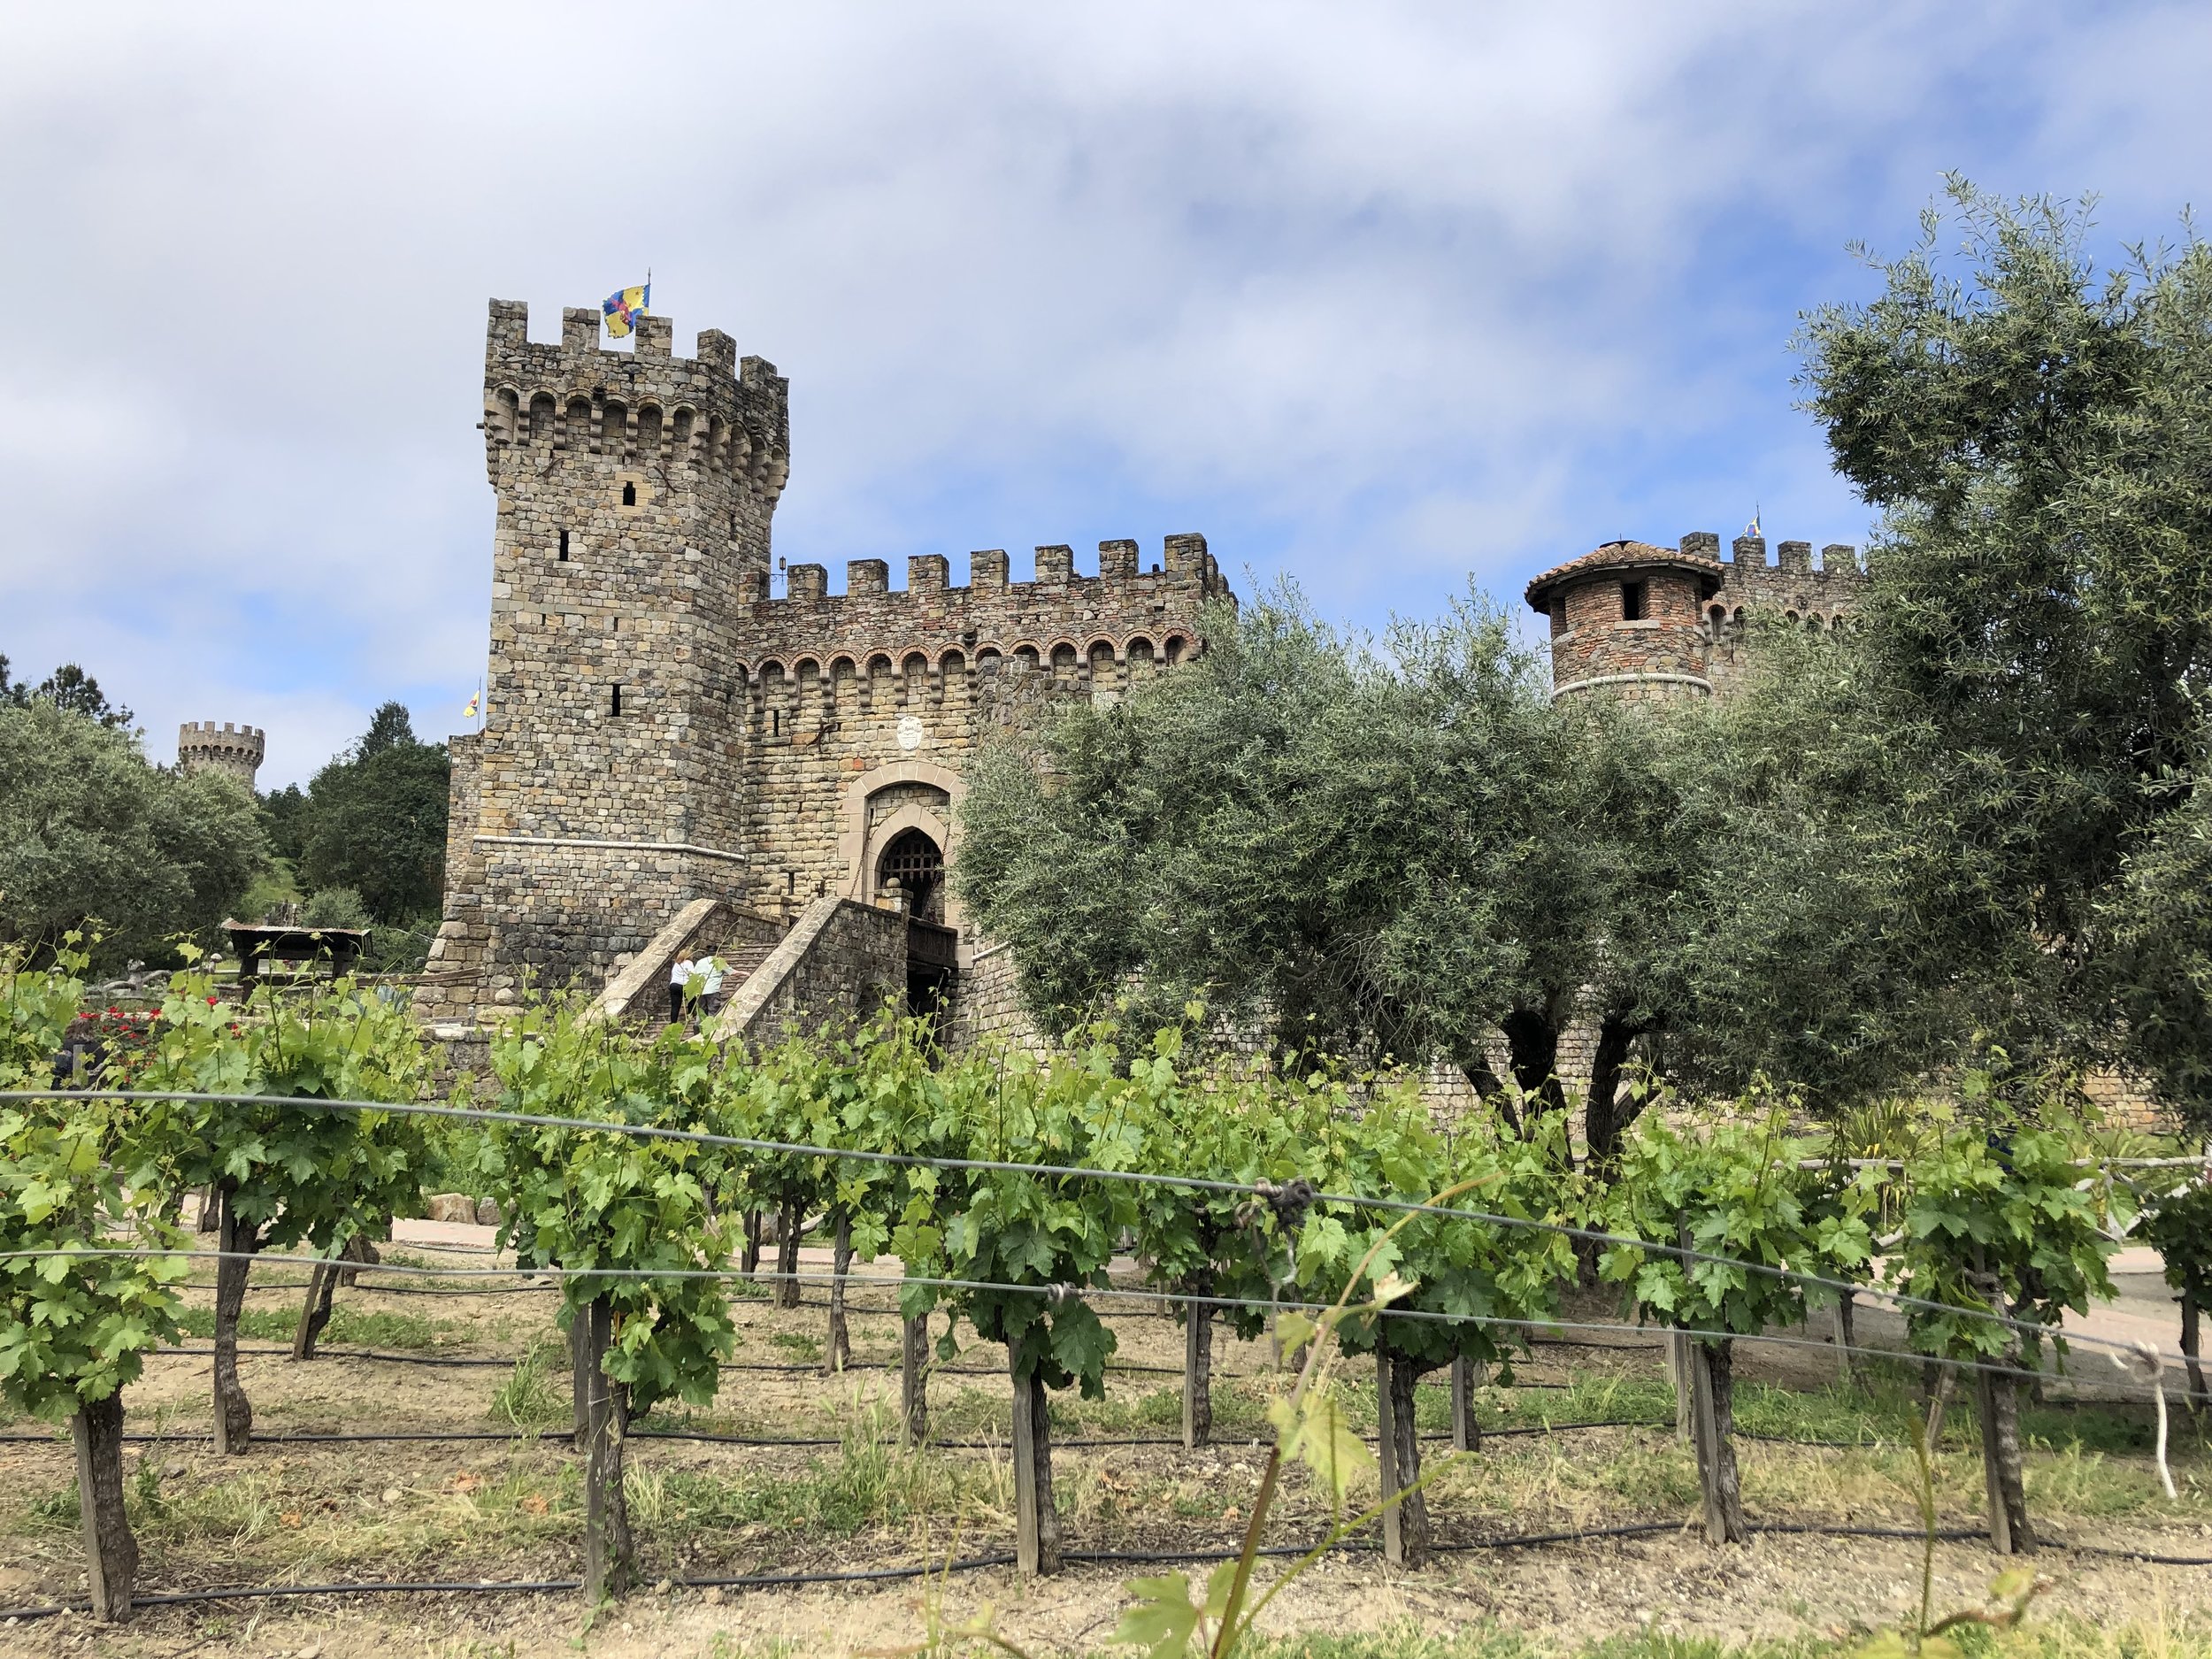 castello di amorosa wine — LikeRing